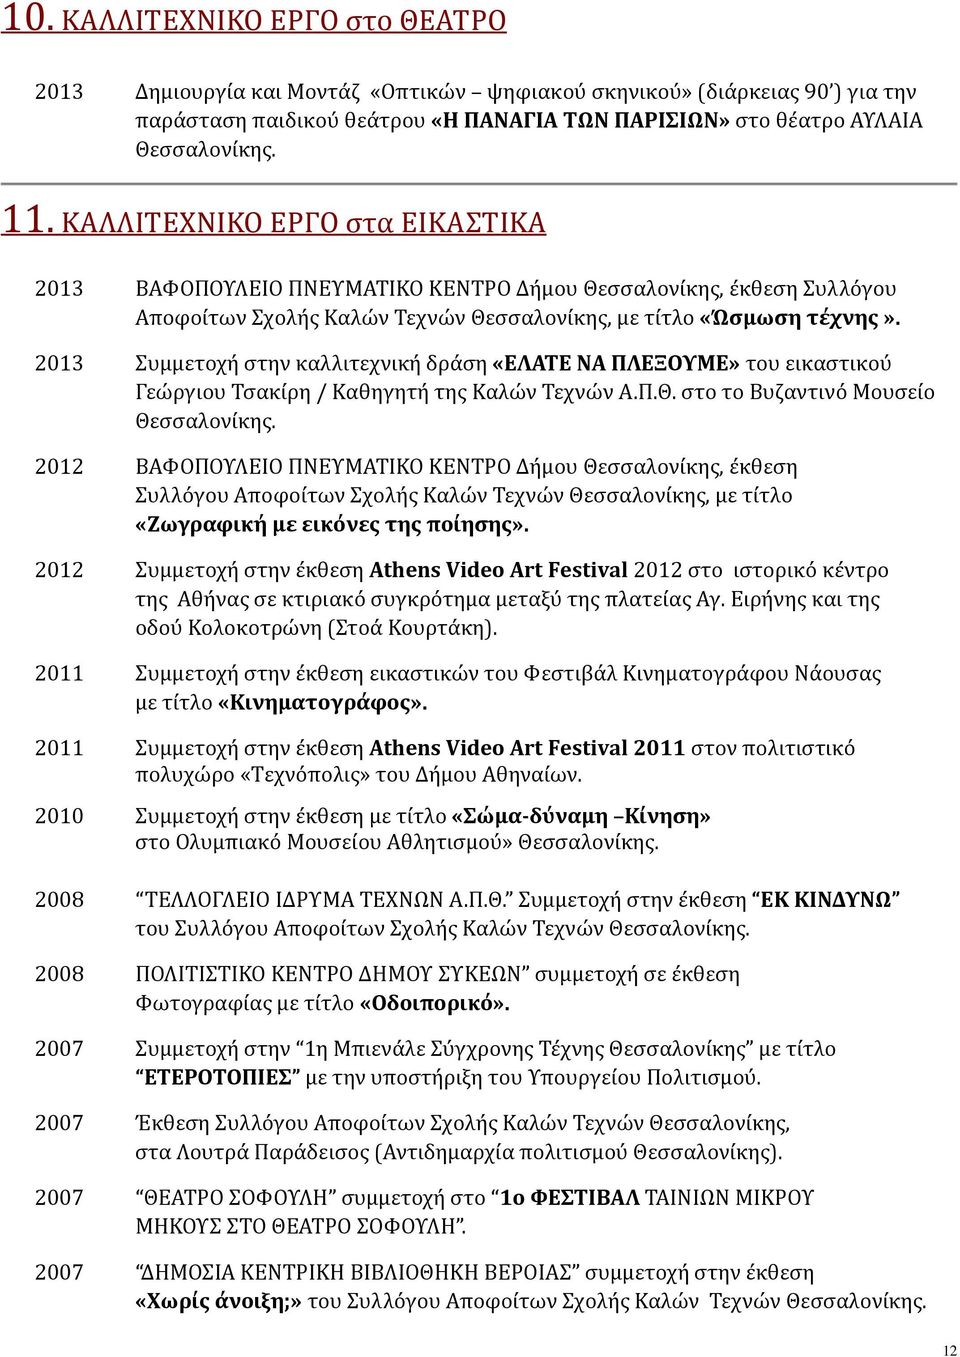 2013 Συμμετοχή στην καλλιτεχνική δράση «ΕΛΑΤΕ ΝΑ ΠΛΕΞΟΥΜΕ» του εικαστικού Γεώργιου Τσακίρη / Καθηγητή της Καλών Τεχνών Α.Π.Θ. στο το Βυζαντινό Μουσείο Θεσσαλονίκης.